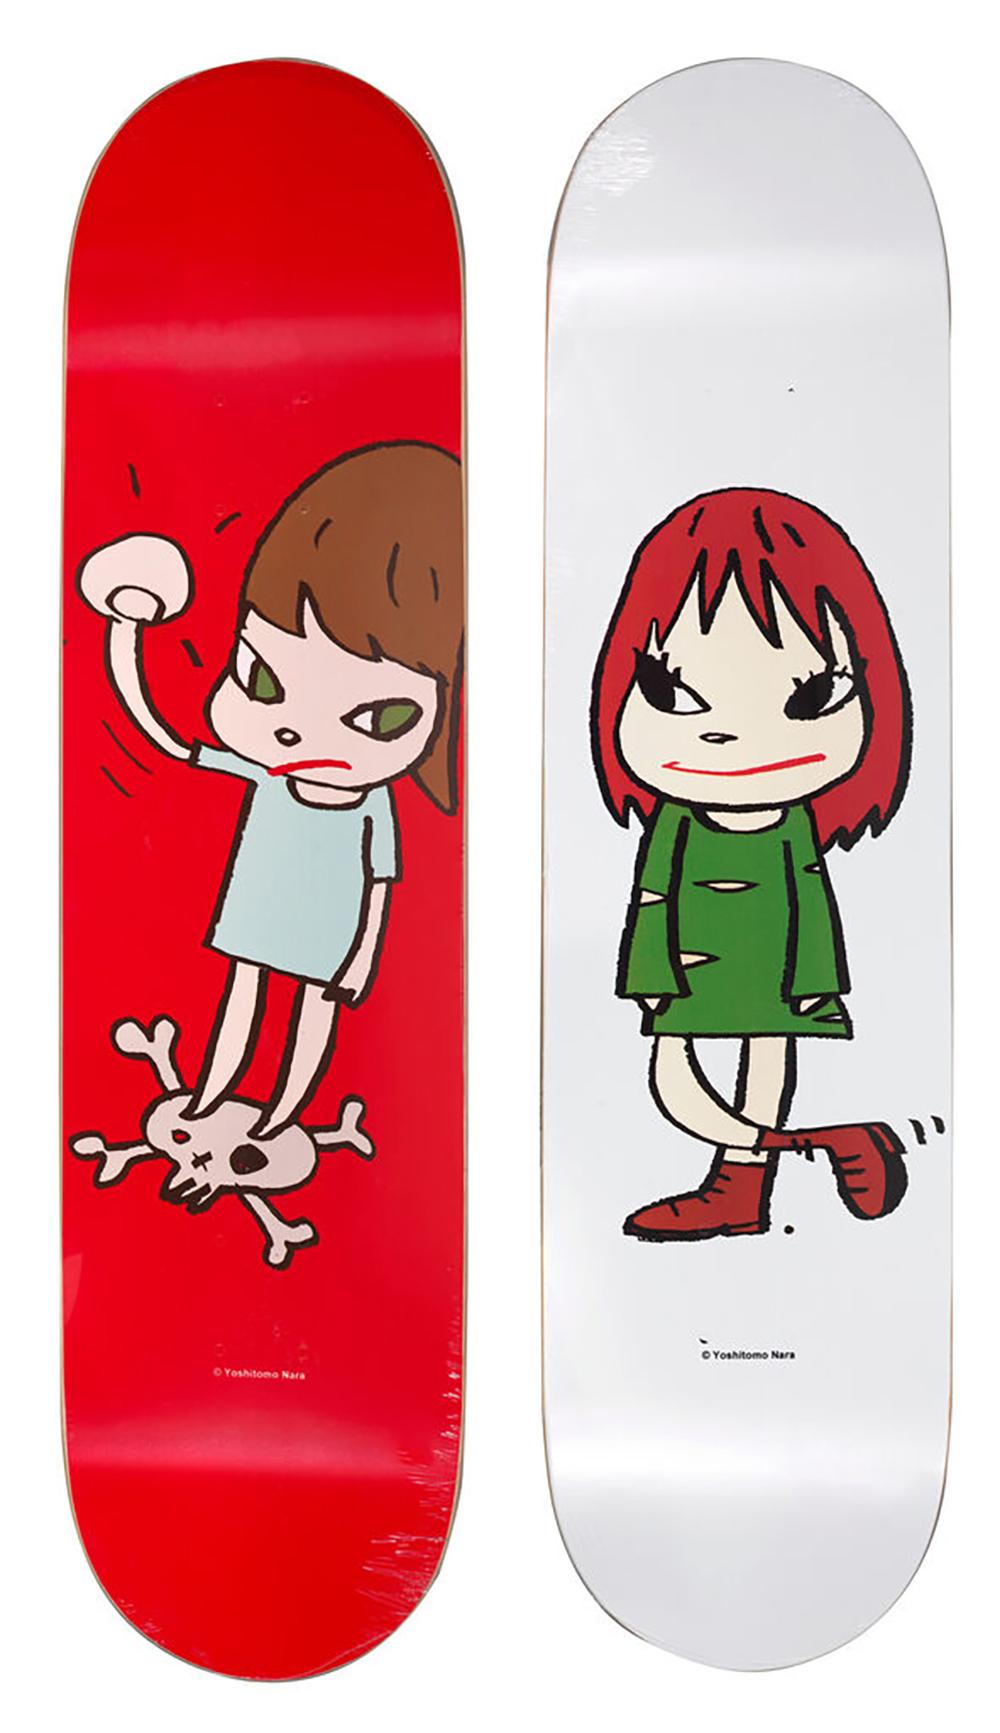 Yoshitomo Nara MoMA Skateboard Decks (vollständiger Satz von 2 Werken):
Diese Skateboard-Decks von Yoshitomo Nara wurden im MoMa New York veröffentlicht und 2017 unter der Aufsicht von Nara mit seinen Kunstwerken "Welcome Girl" (links) und "Solid